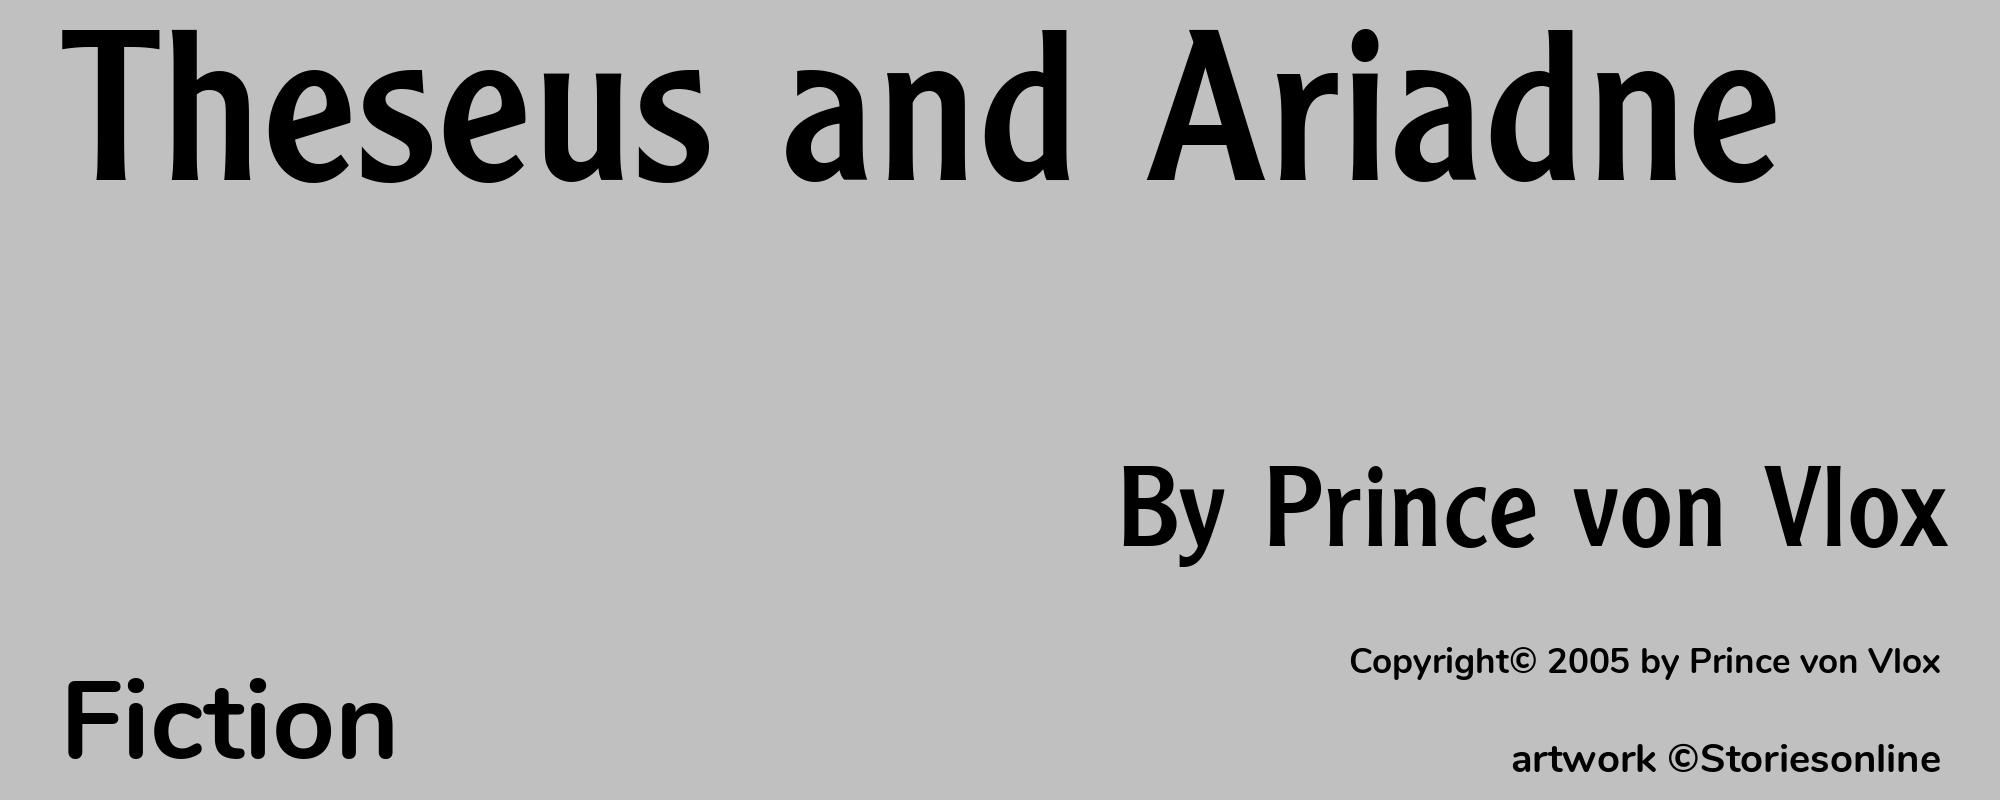 Theseus and Ariadne - Cover